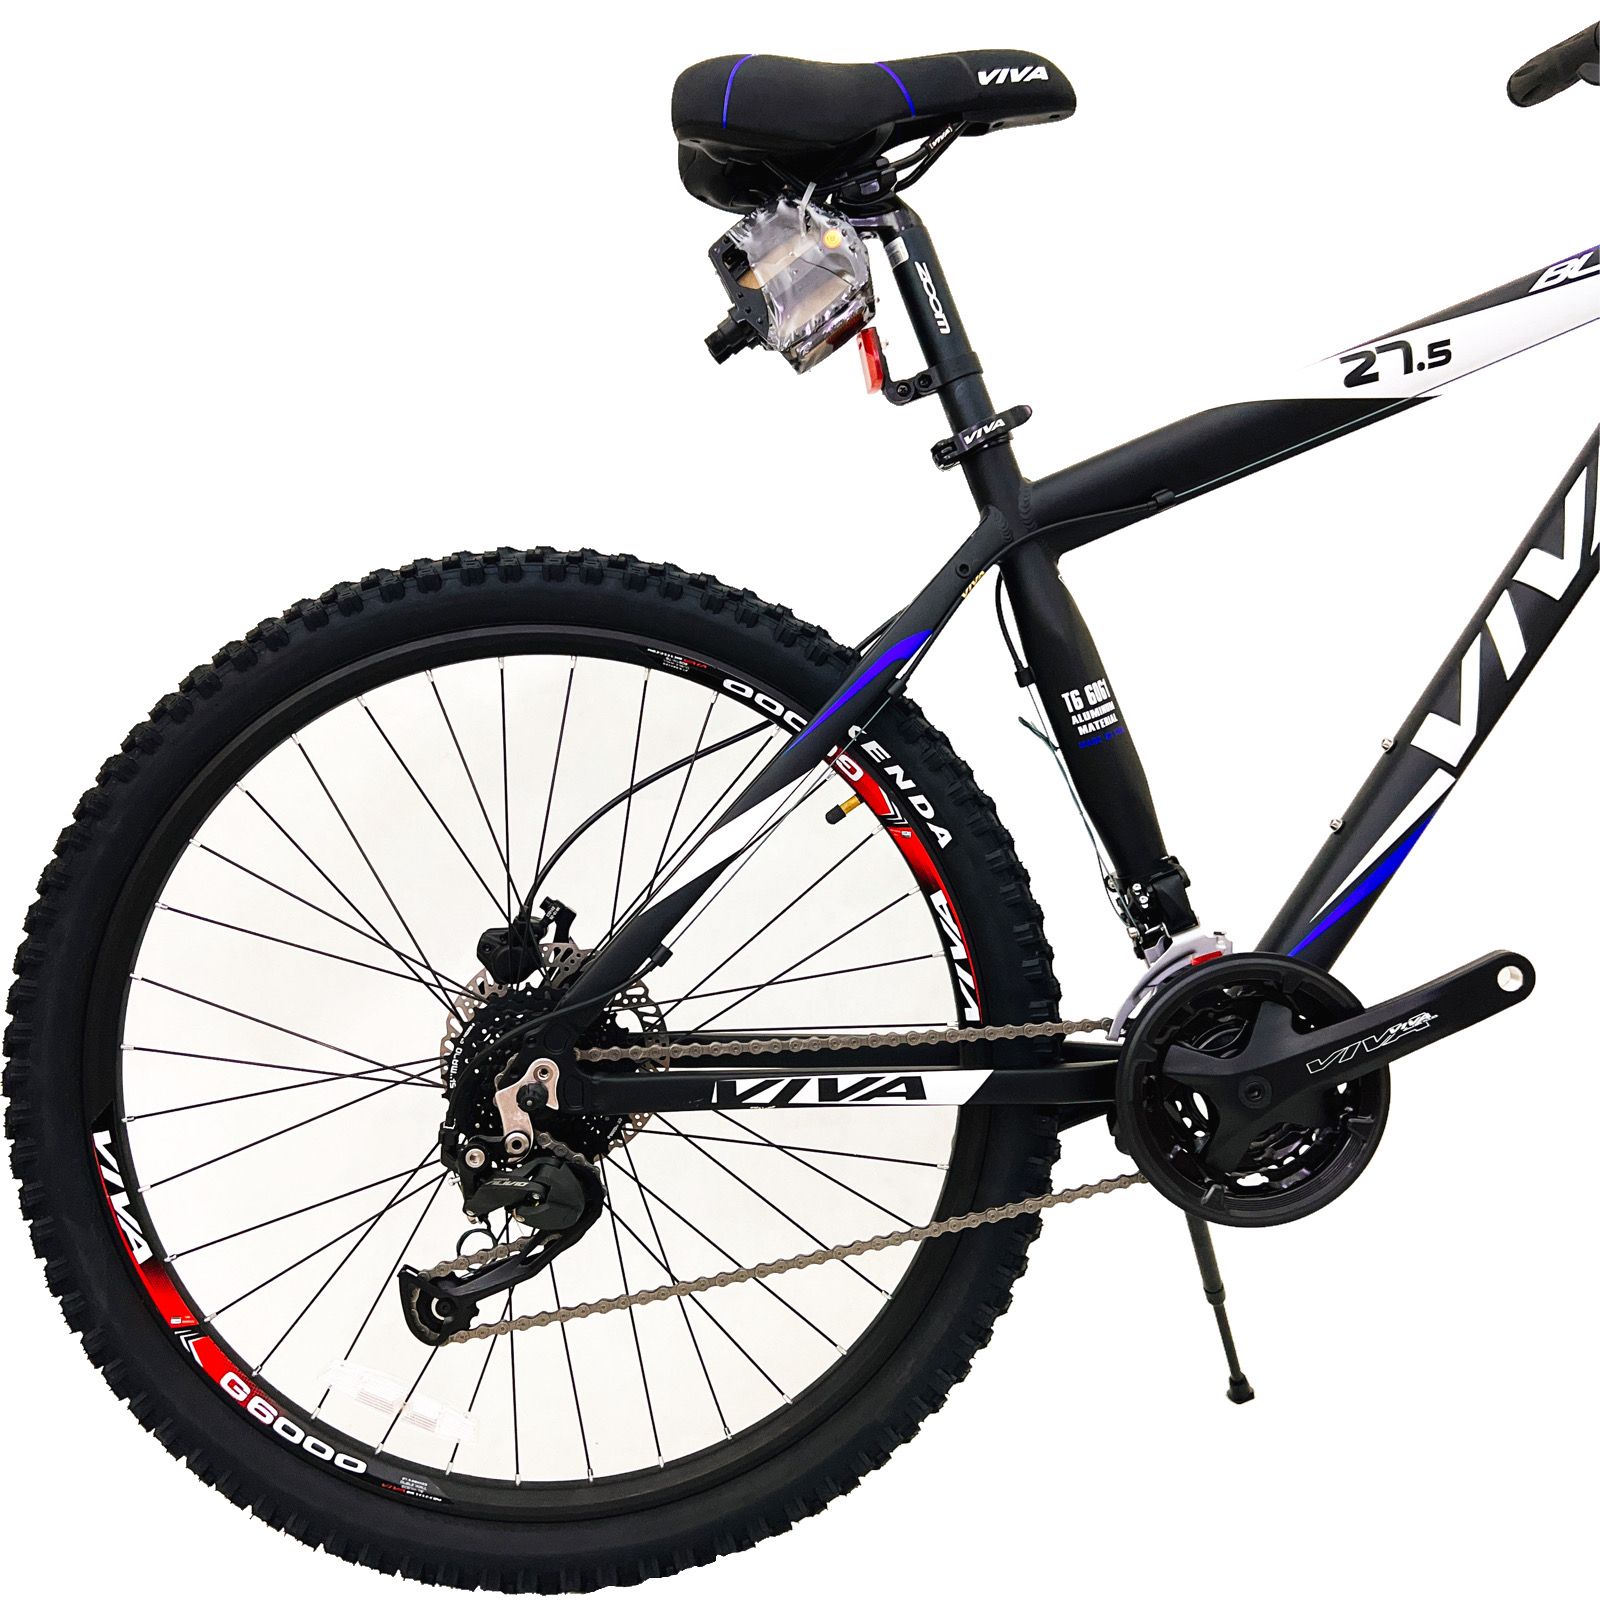 دوچرخه کوهستان ویوا مدل  BLAZE کد 27 سایز 27.5 -  - 5